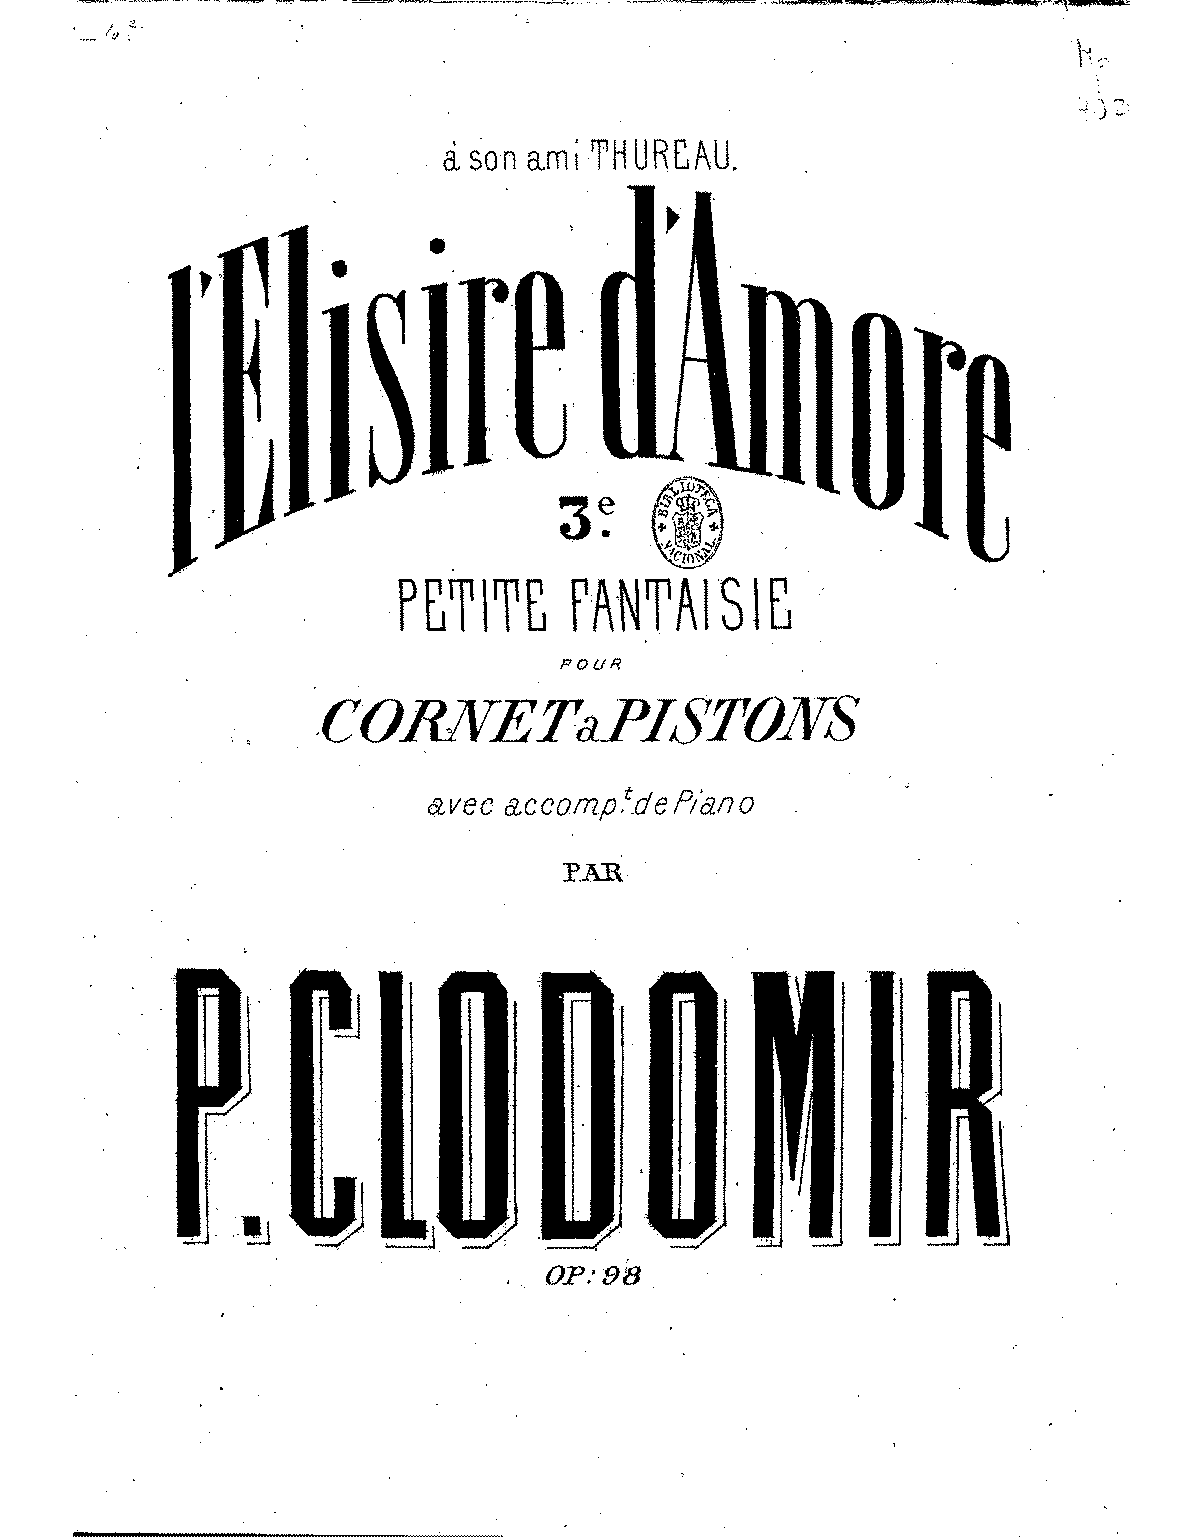 donizetti concertino pdf download